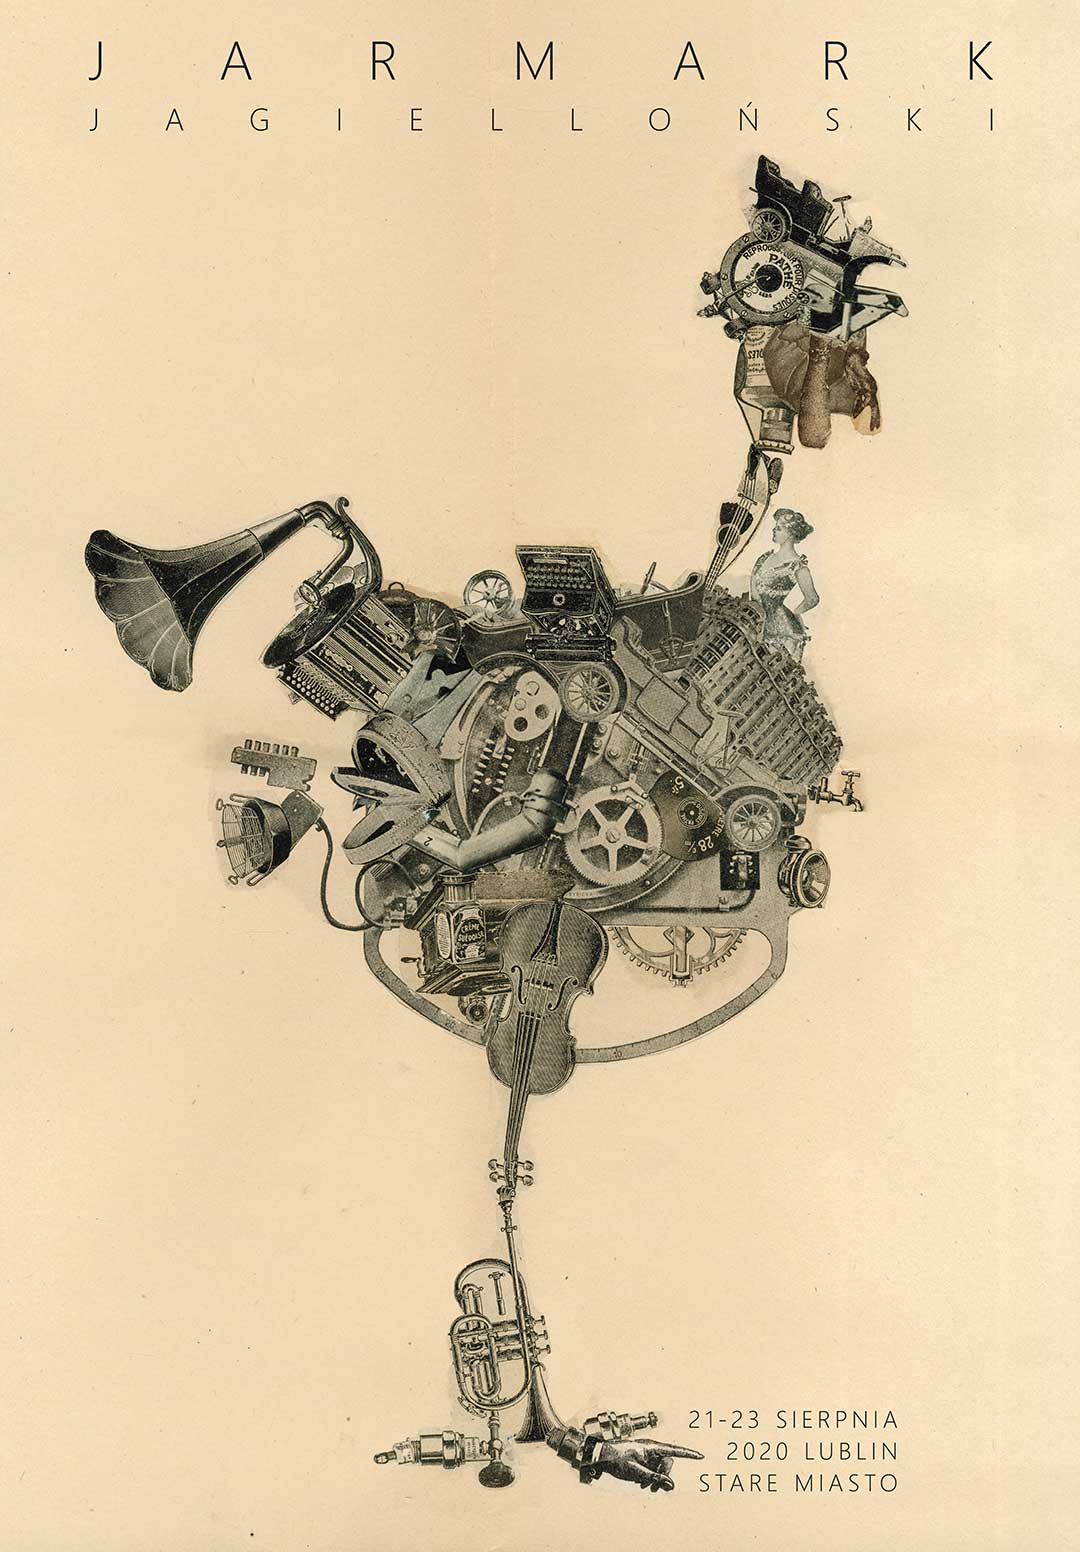 [Plakat Jarmarku Jagiellońskiego, kolaż w stylistyce retro, kura w centralnej części, jest wykonana z części mechanicznych i instrumentów]